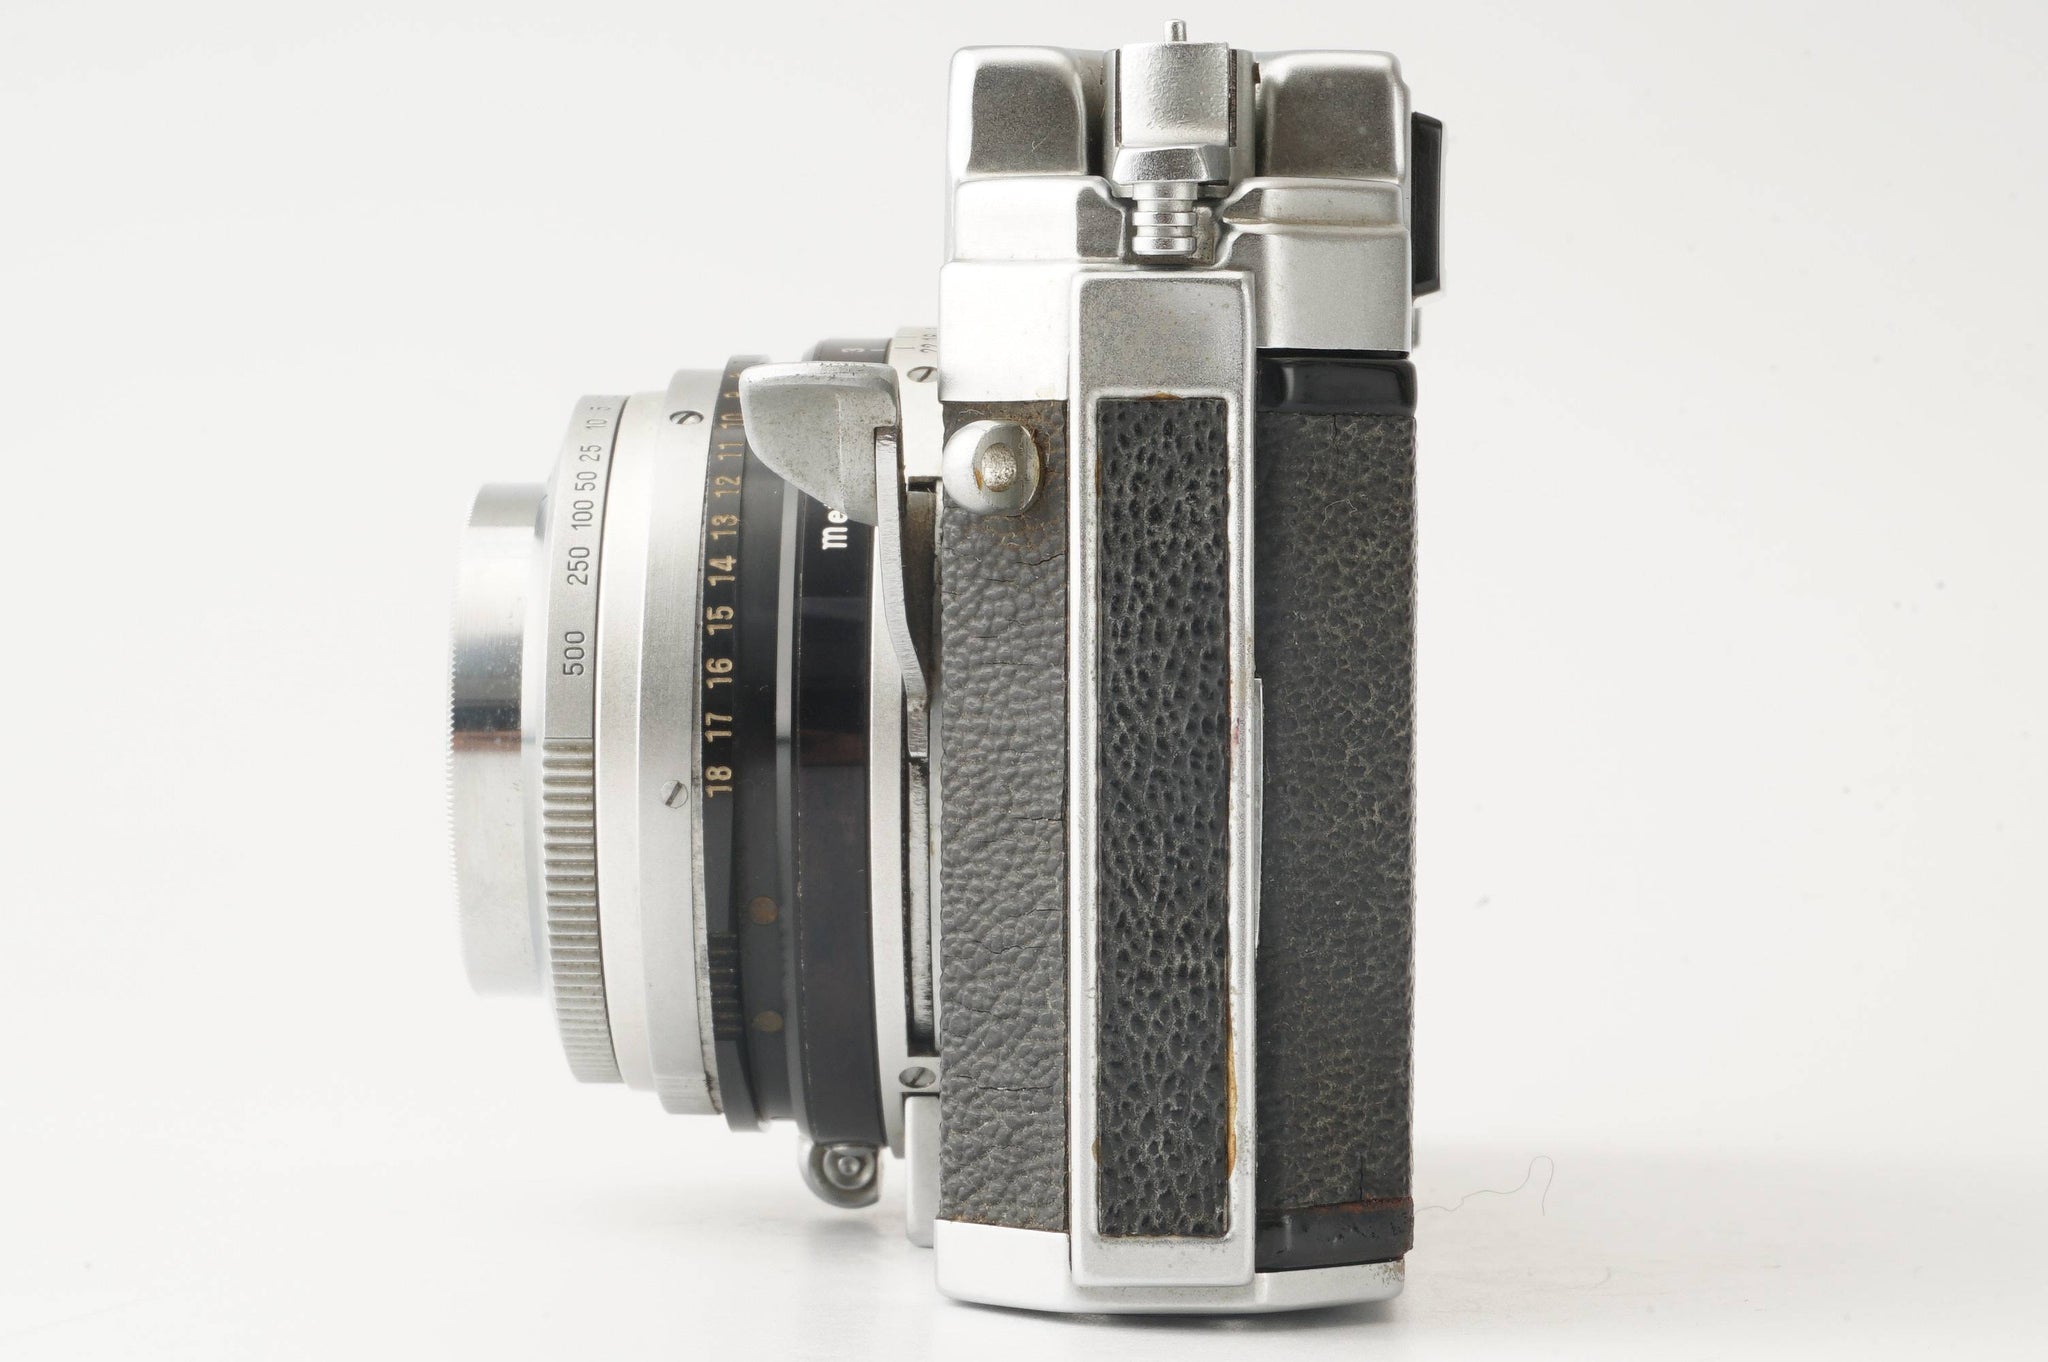 小西六 コニカⅢA型 レンジファインダーカメラ - フィルムカメラ